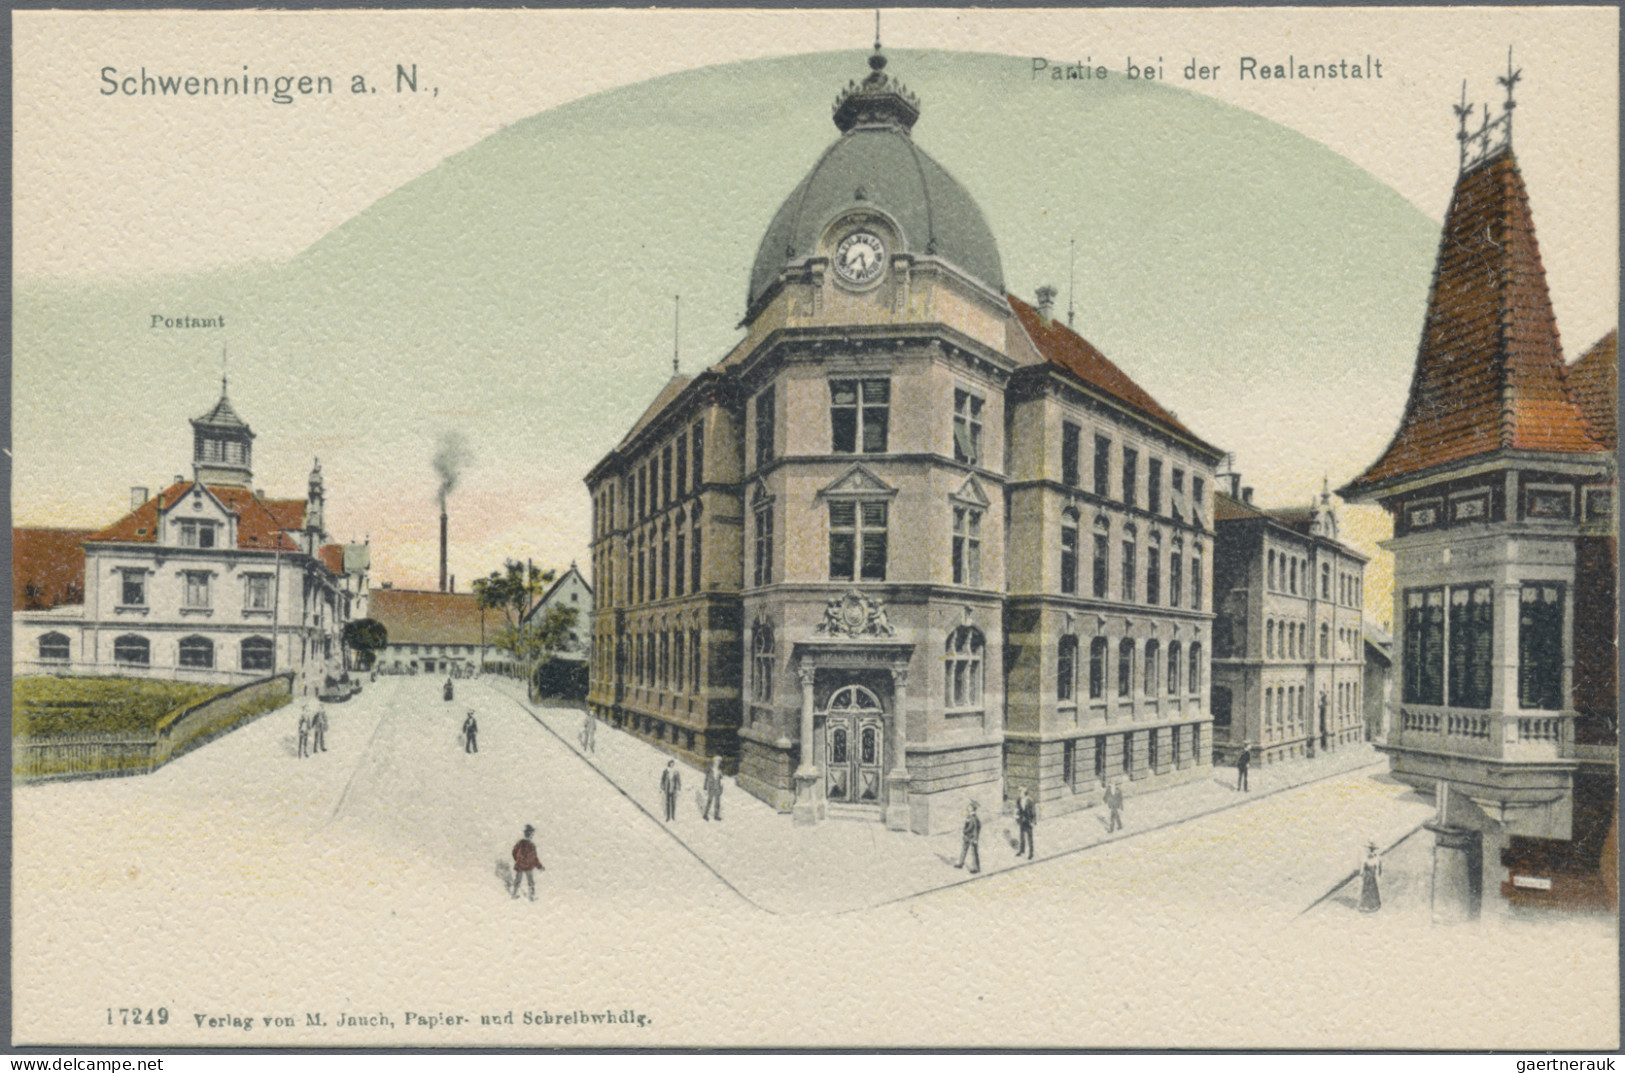 Ansichtskarten: Baden-Württemberg: BADEN-WÜRTTEMBERG, umfangreicher Posten mit c